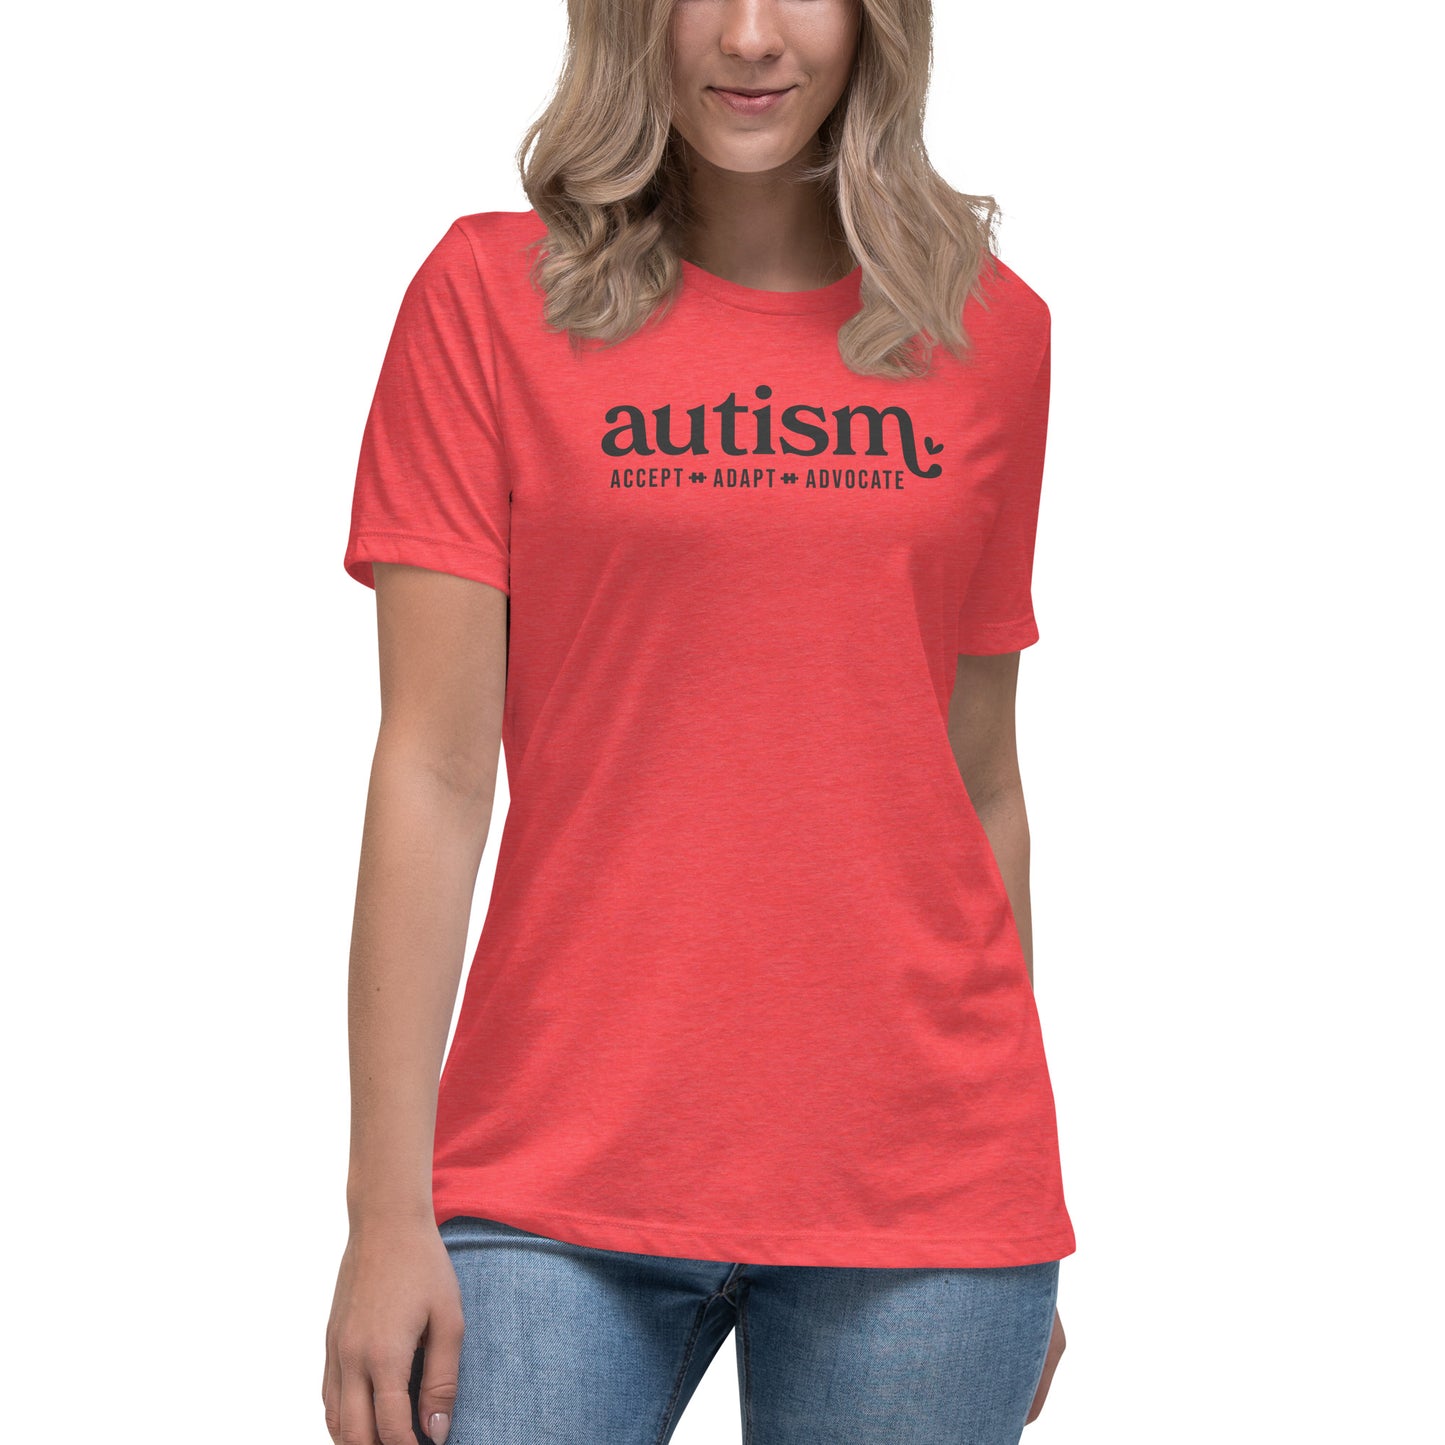 Autism - Accept. Adapt. Advocate. [Women’s T-shirt]